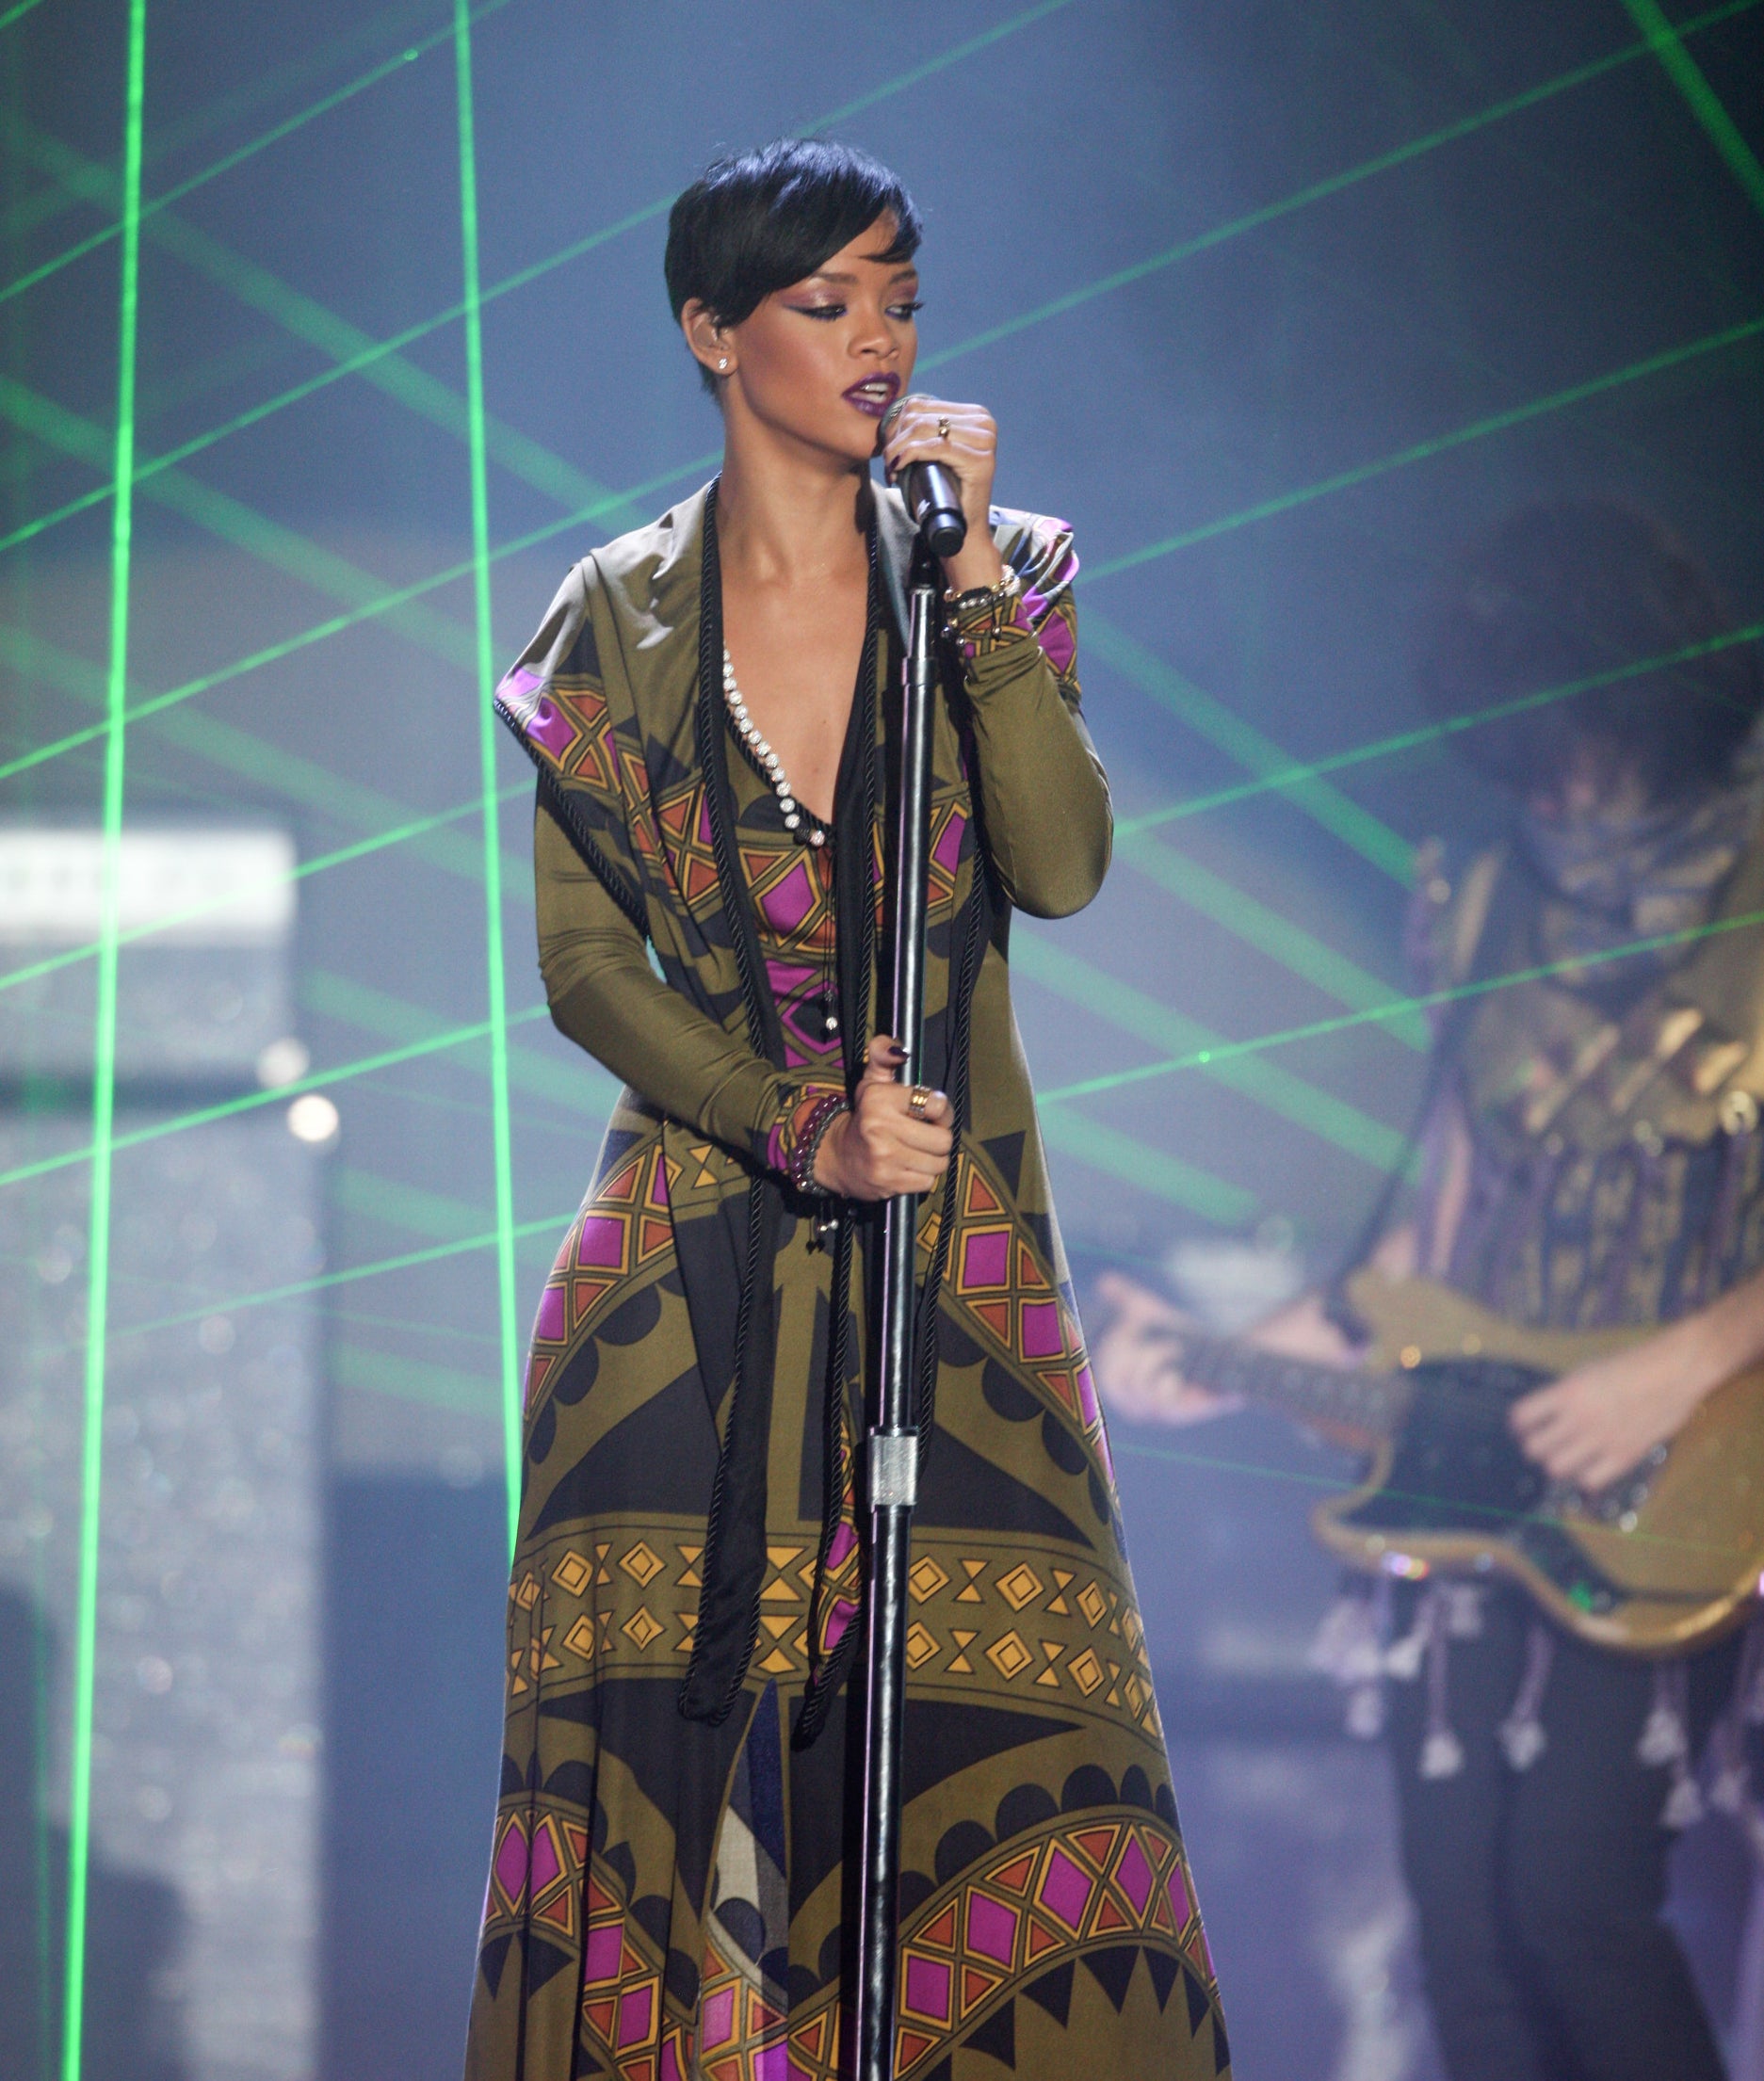 Rihanna performing at the BRIT Awards